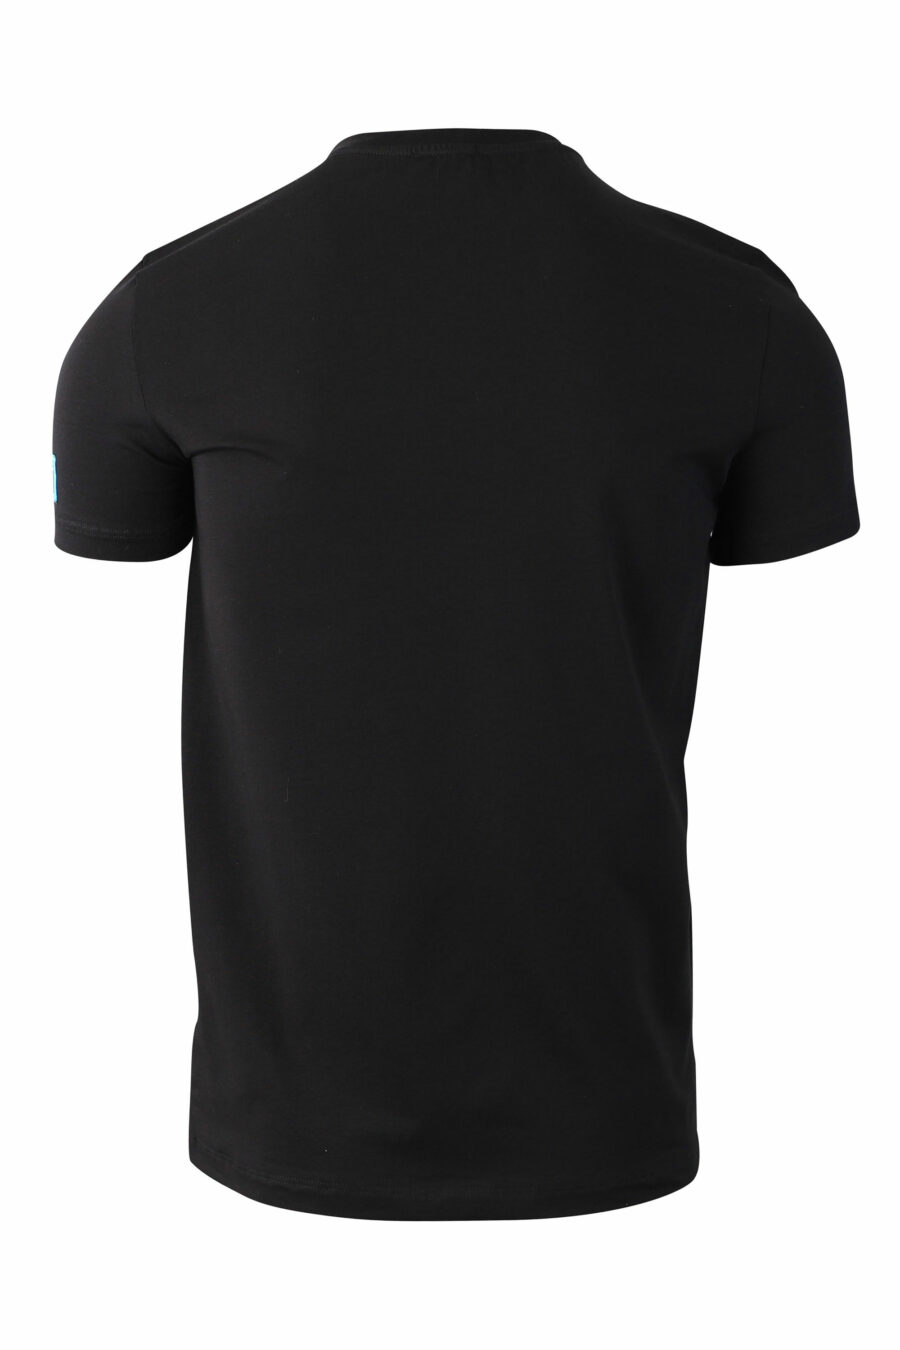 Black T-shirt with blue mini-logo "icon" on sleeve - IMG 0037 1